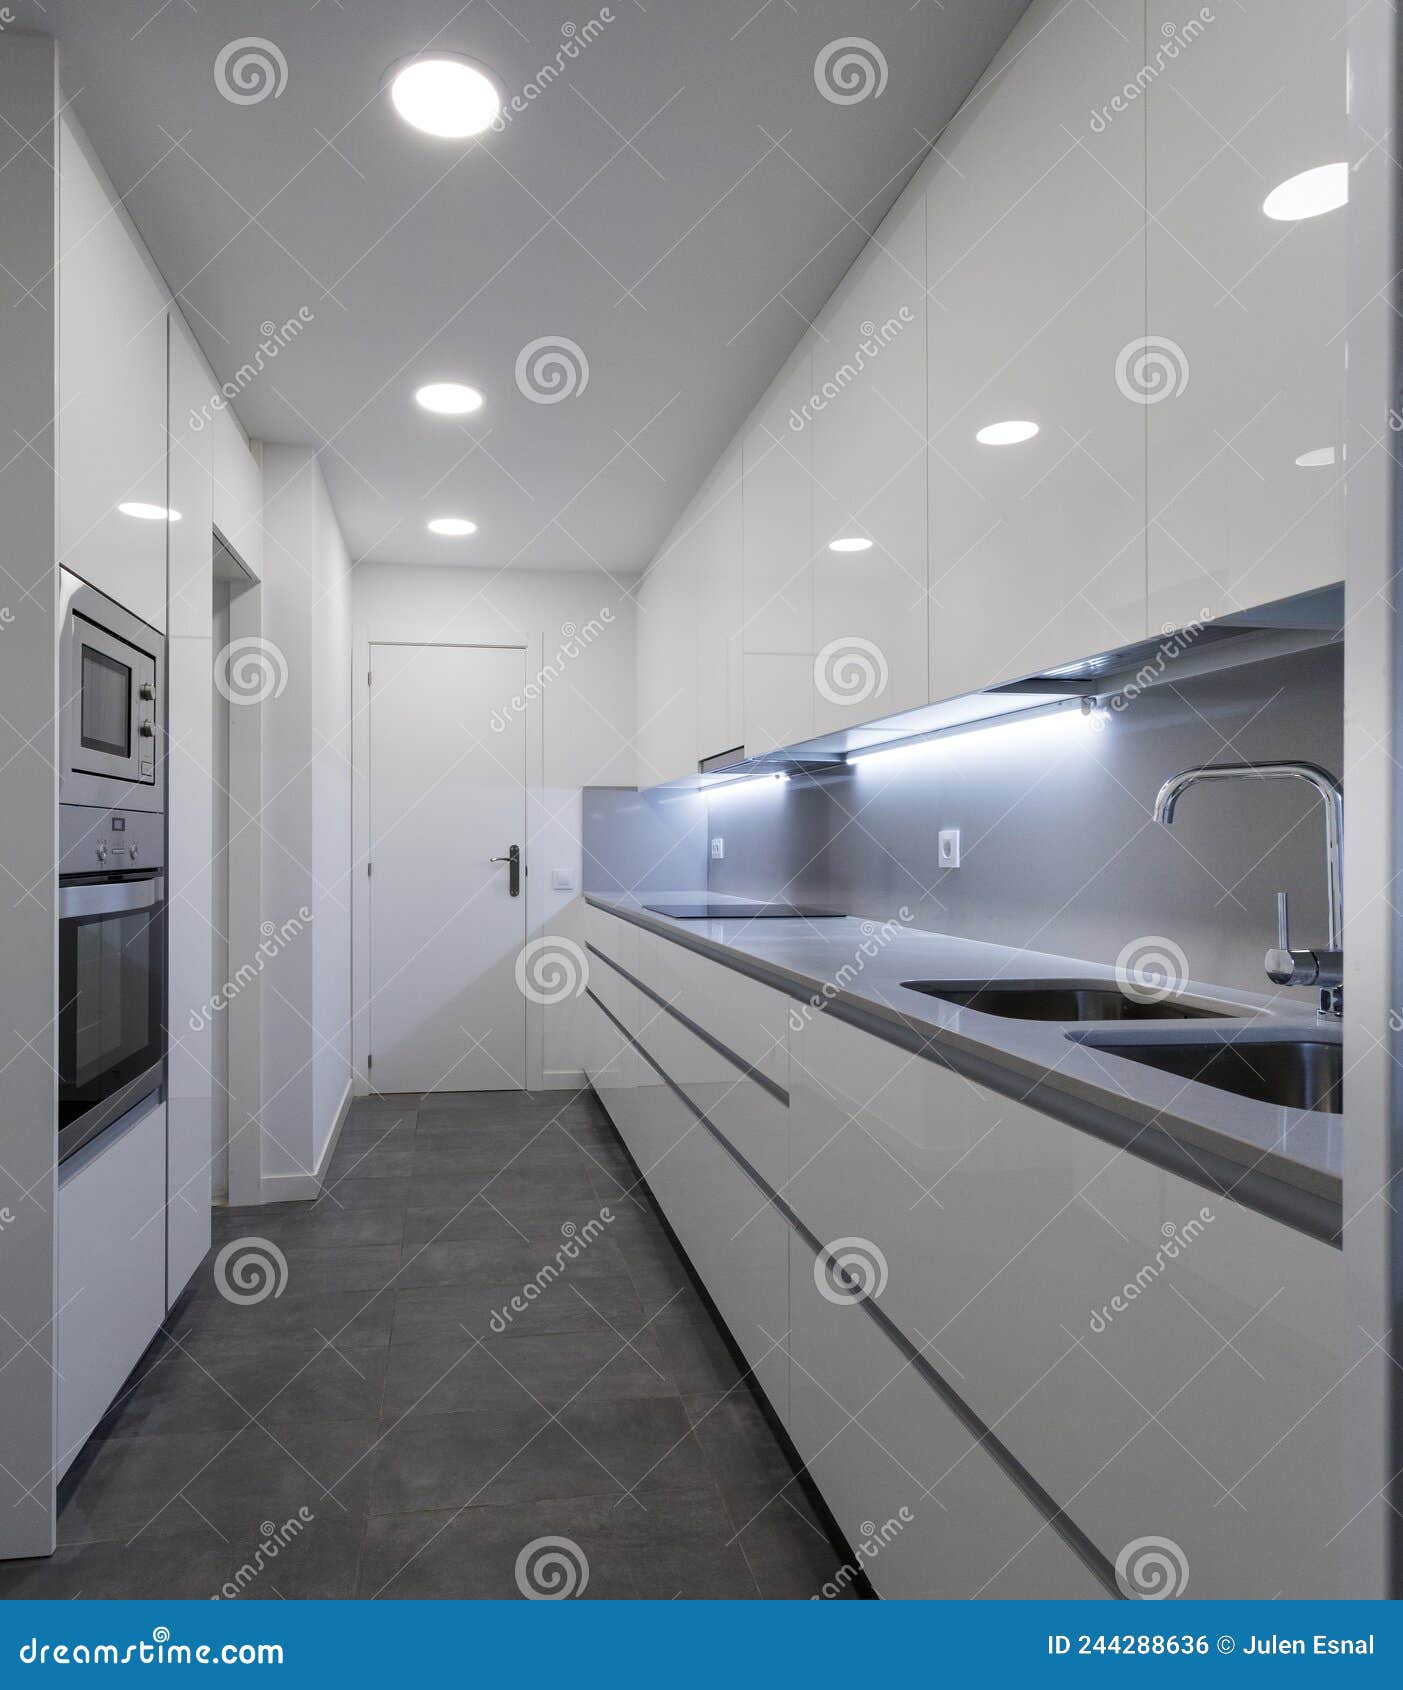 spacious new kitchen in white